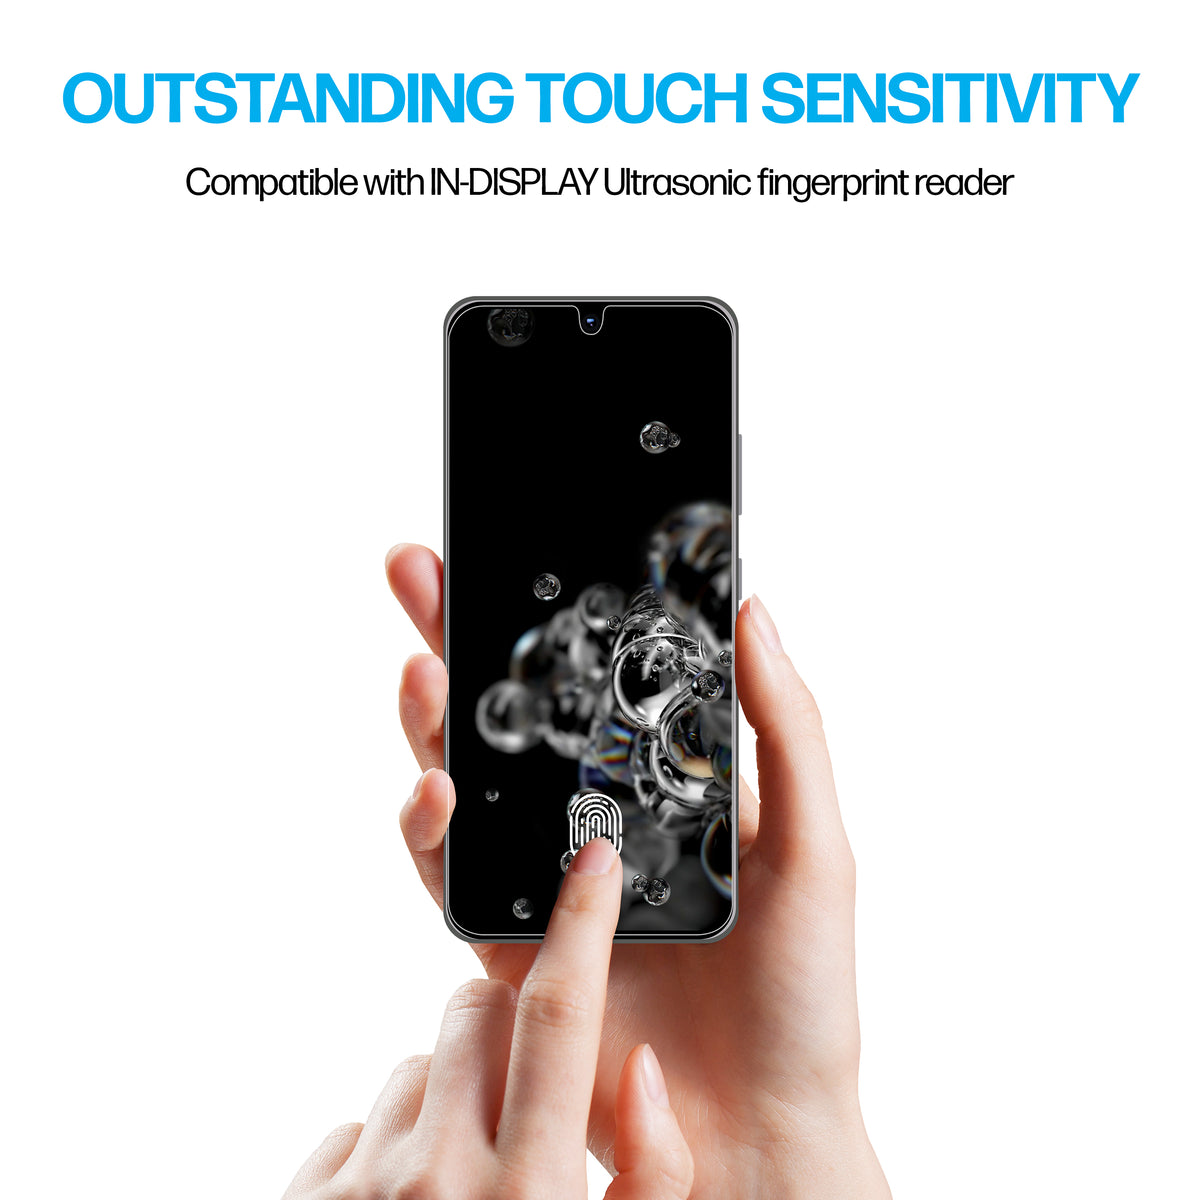 Samsung Galaxy S20 Ultra TPU Anti-Scratch Screen Protector Film [2-Pack] Cover